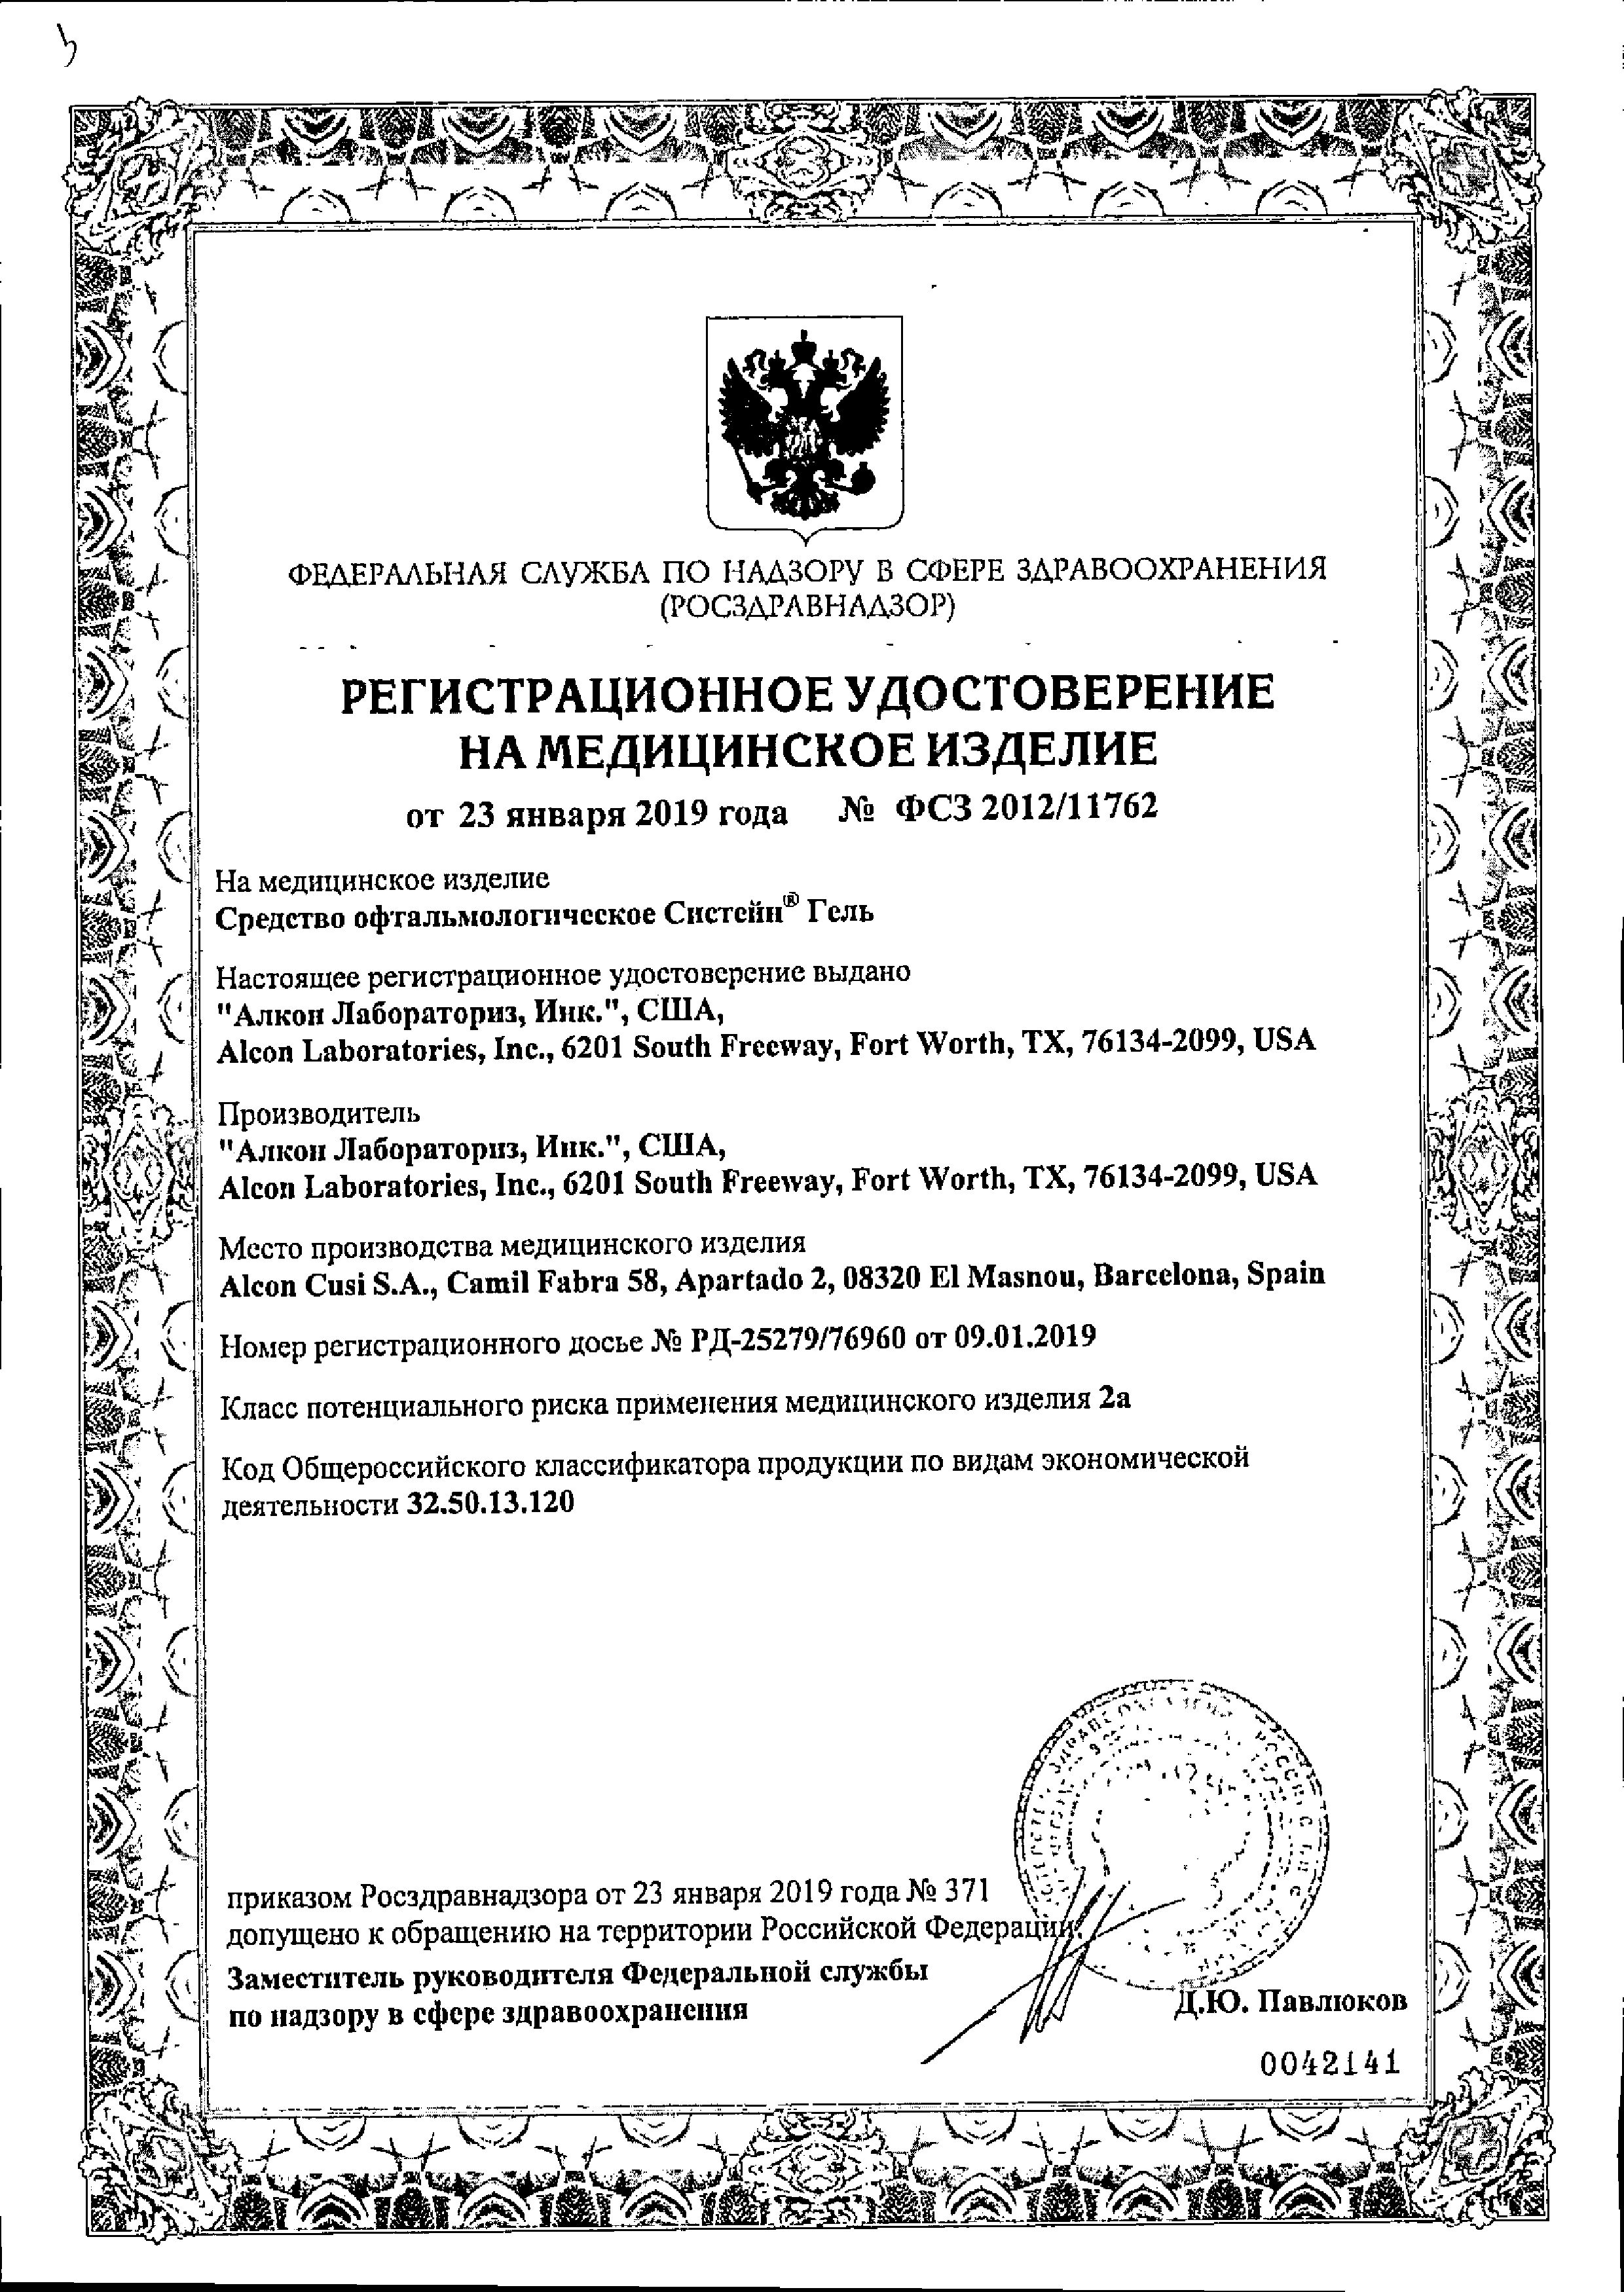 Систейн Гель Средство офтальмологическое сертификат